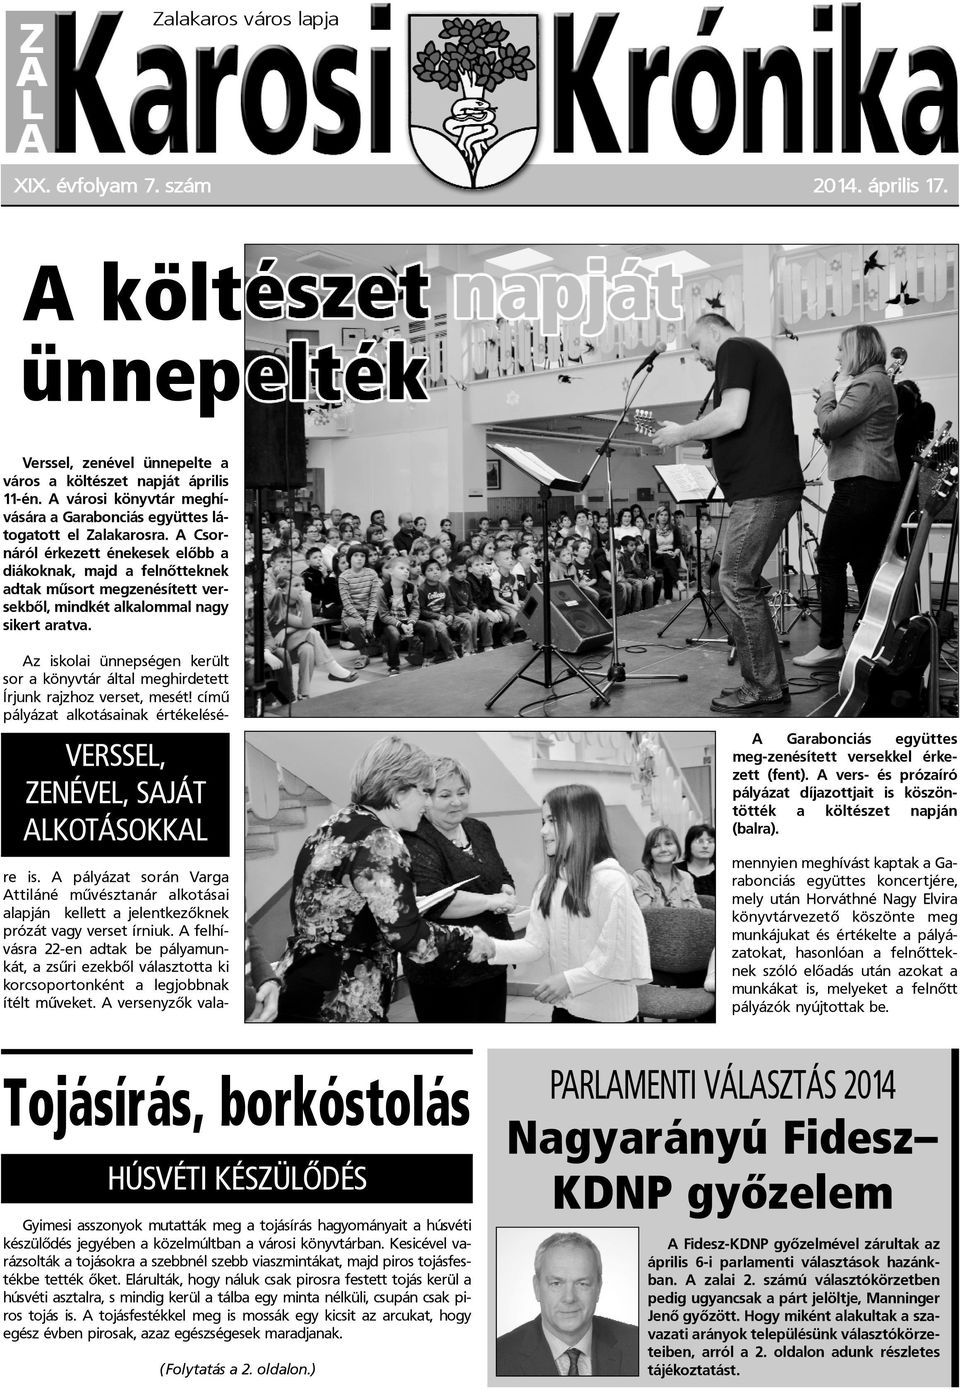 A Csornáról érkezett énekesek elõbb a diákoknak, majd a felnõtteknek adtak mûsort megzenésített versekbõl, mindkét alkalommal nagy sikert aratva.